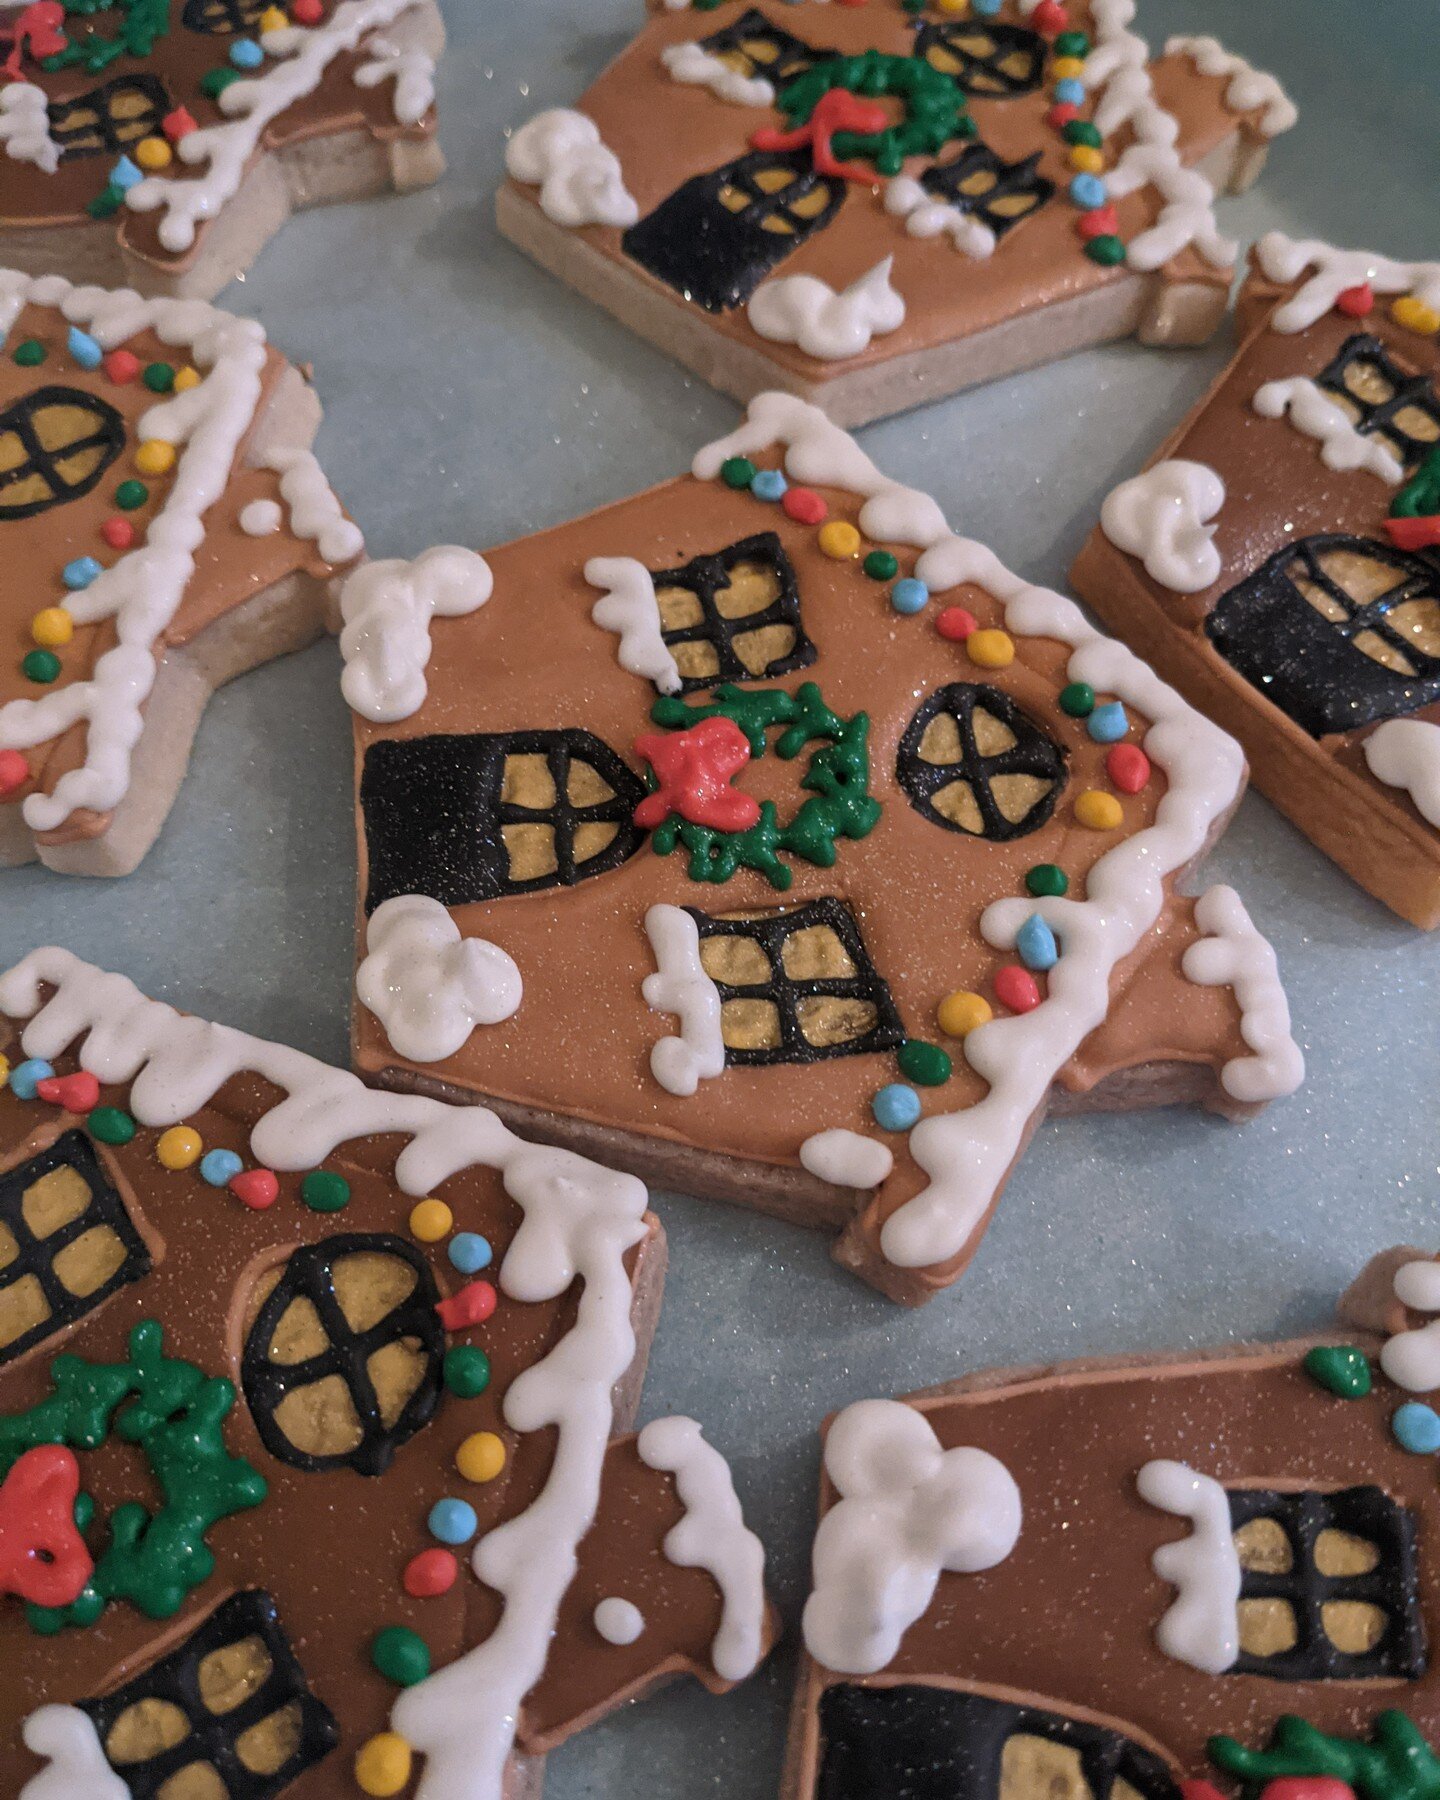 December throwback! Christmas in July? ⛄🎄#sugarcookies #sugarcookiesofinstagram #royalicing #royalicingcookies #christmasinjuly #holiday